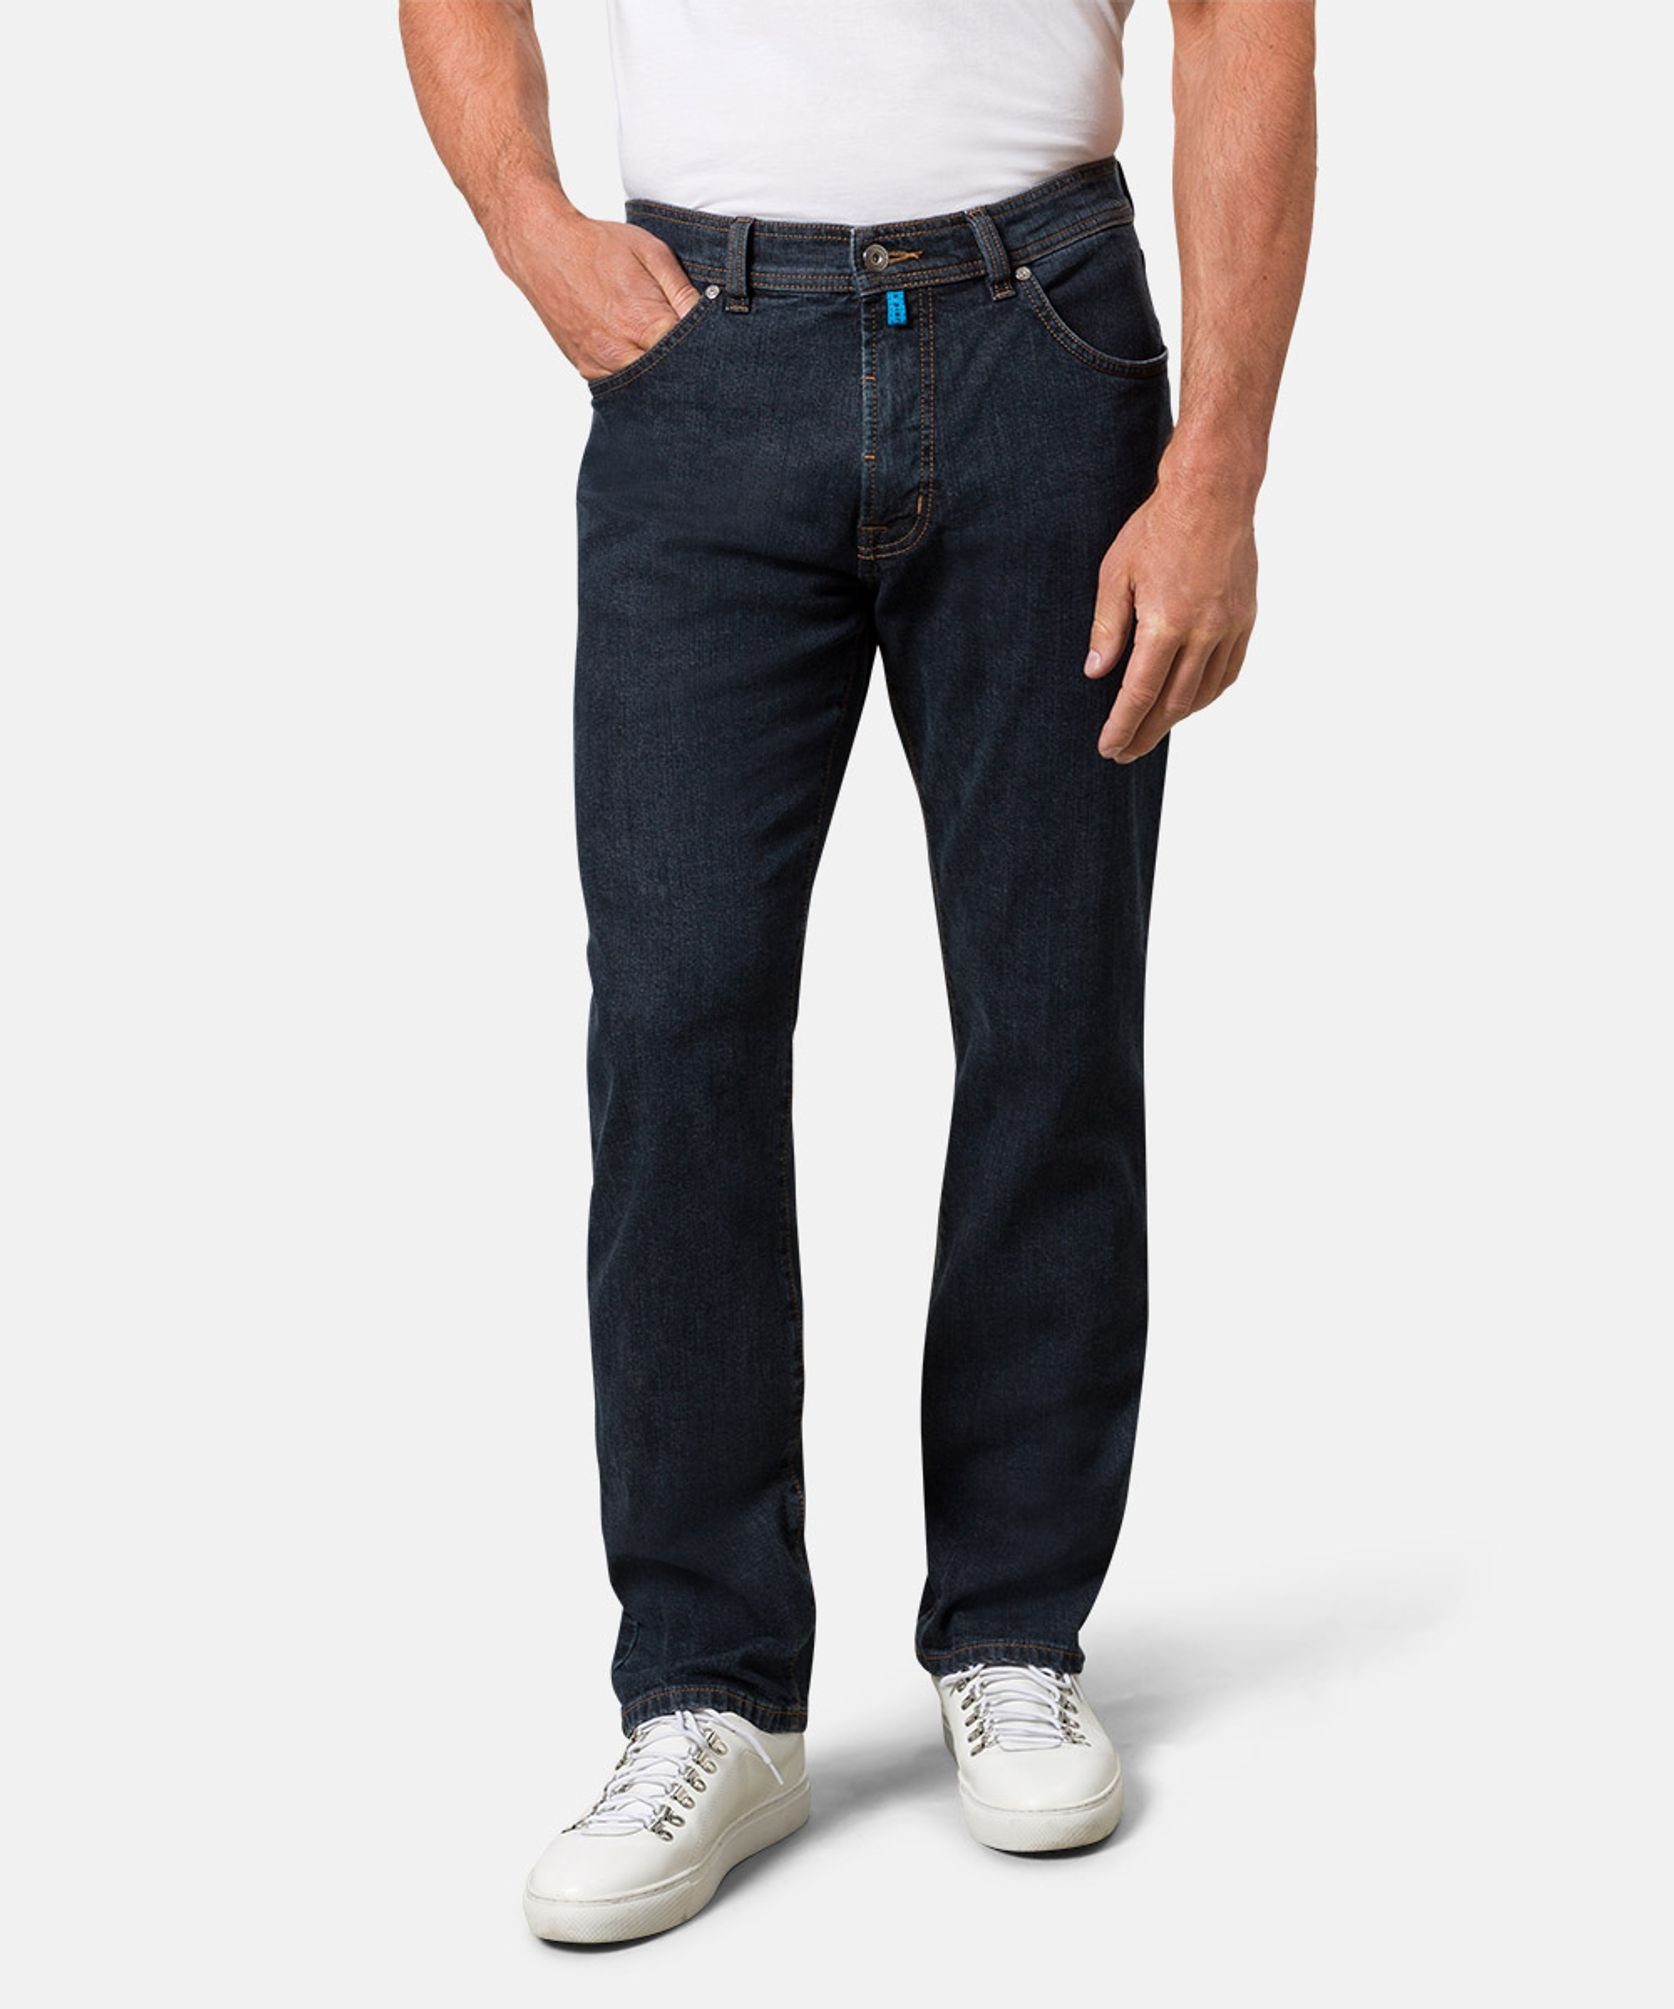 5-Pocket-Jeans 32310.7003 Cardin C7 Pierre